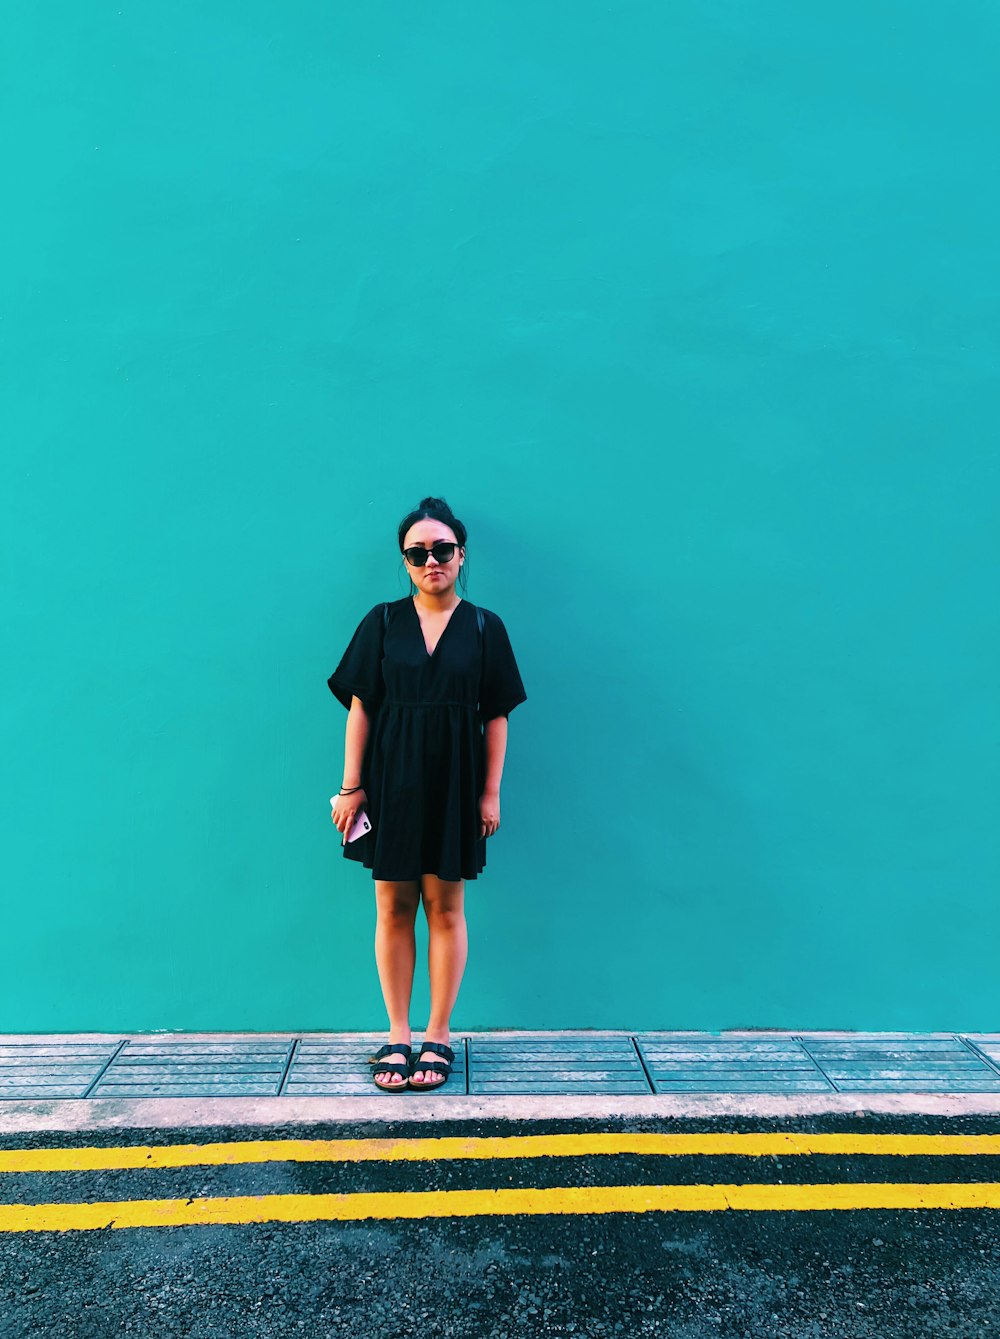 Frau trägt schwarzes Kleid, während sie ein Smartphone in der Hand hält und neben einer türkisfarbenen Wand steht